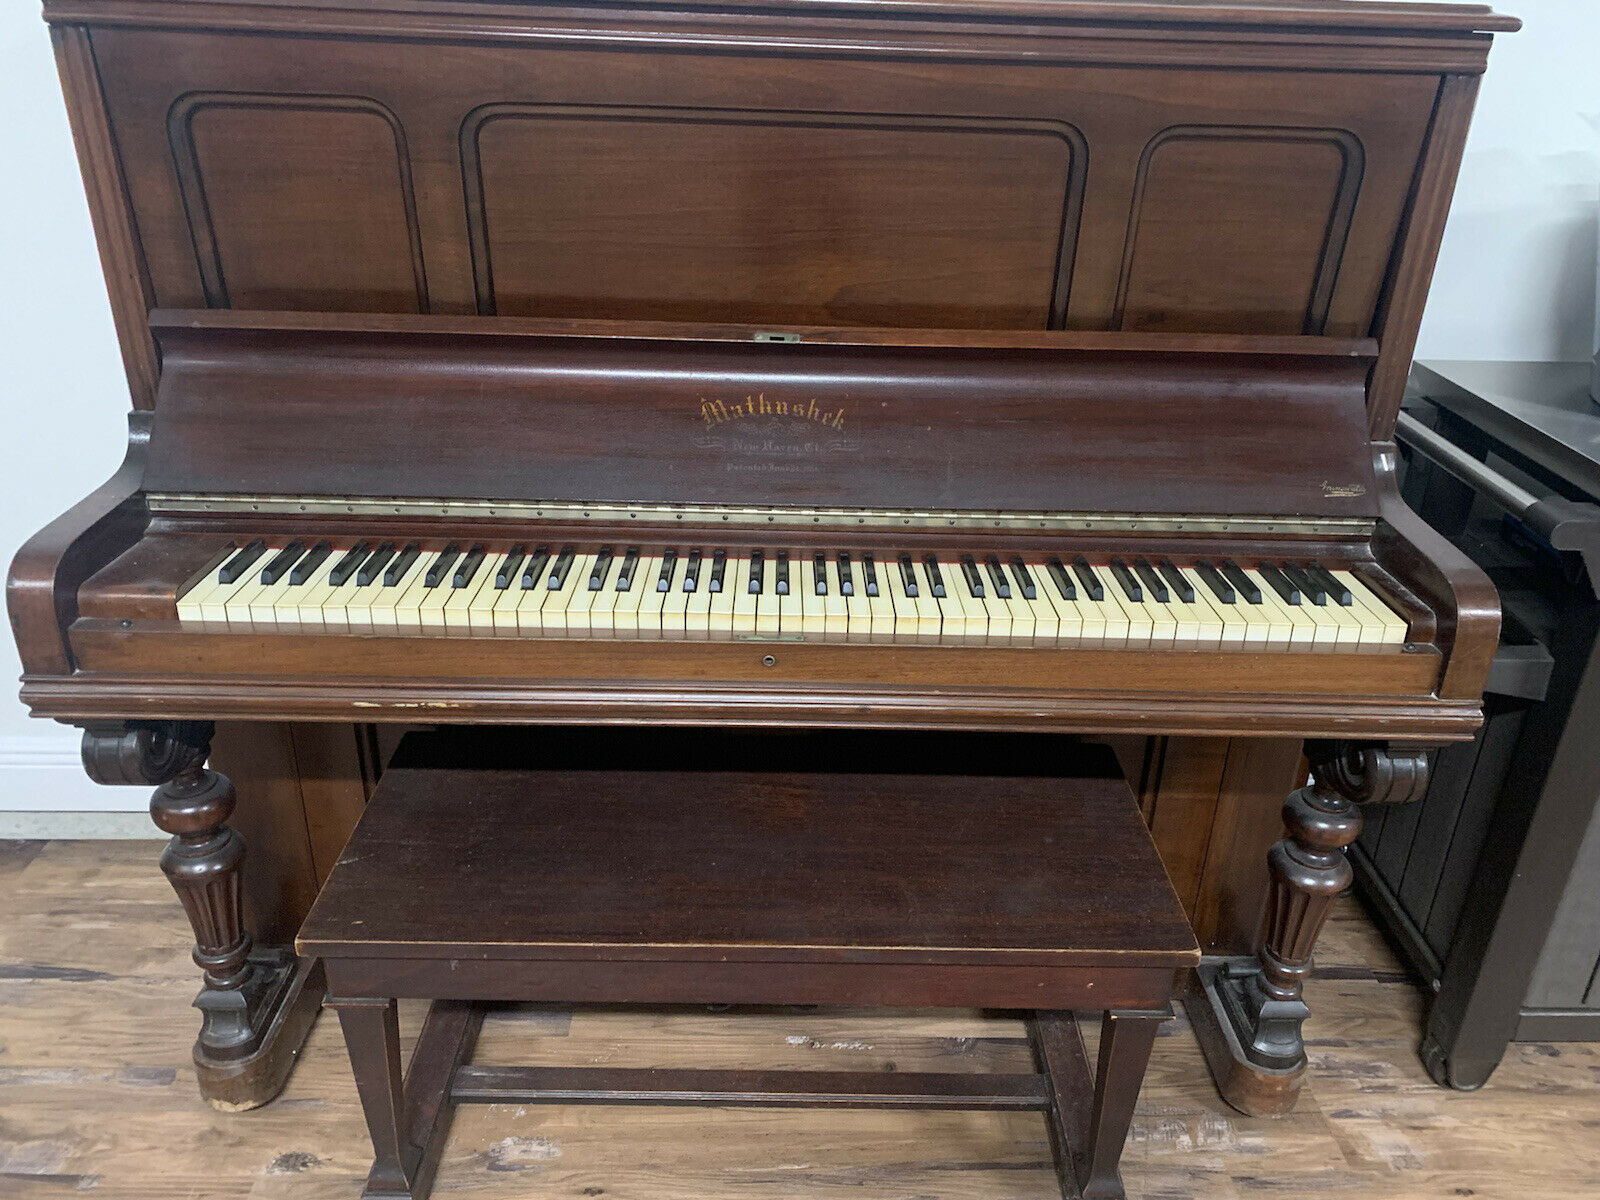 Mathashek Piano